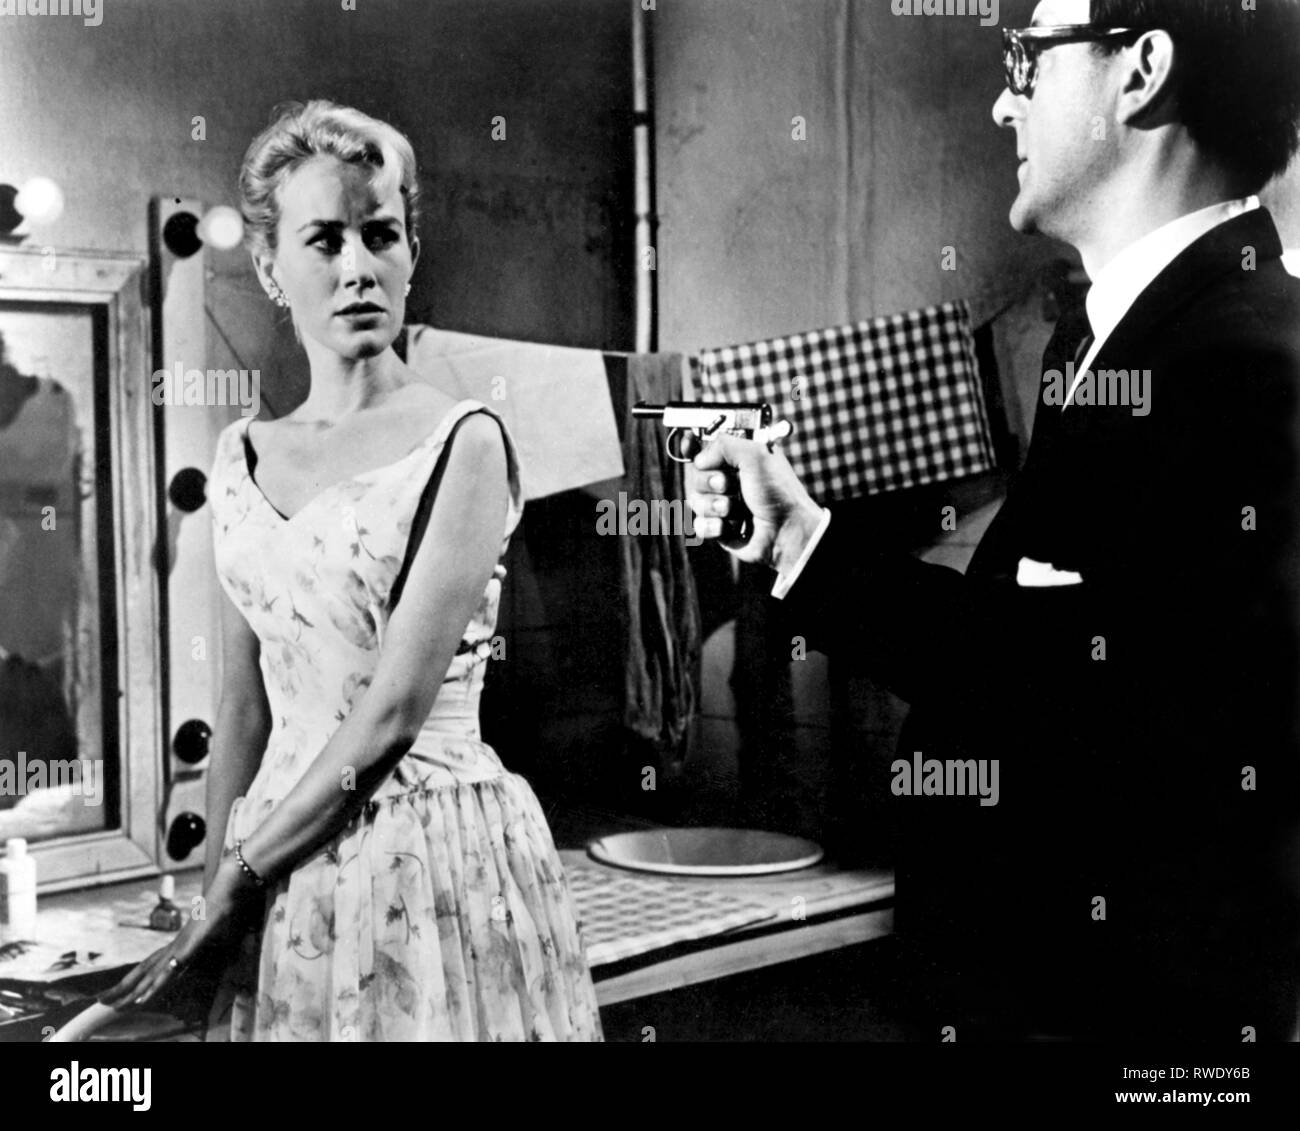 Giovani,Corbett, Cover Girl killer, 1959 Foto Stock